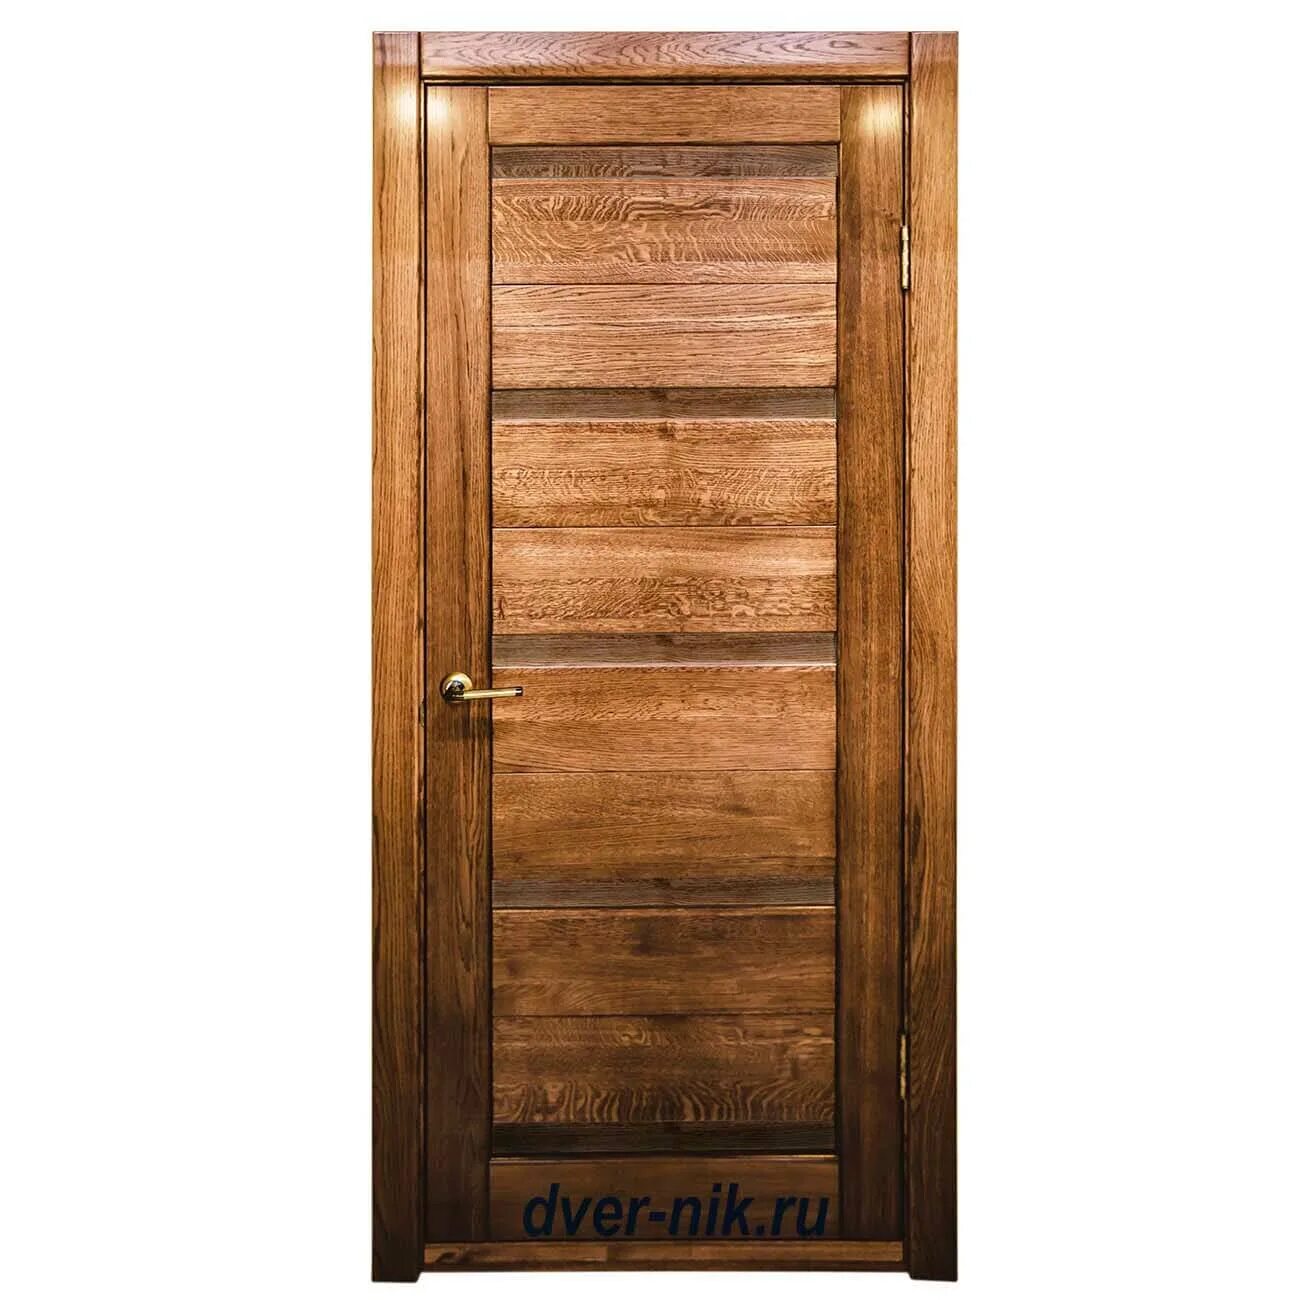 FF OKSAMANTY 3p дверь. Межкомнатные двери дуб антик. Двери из массива 600х1900. Двери межкомнатные цвет дуб антик. Цена деревянных дверей купить